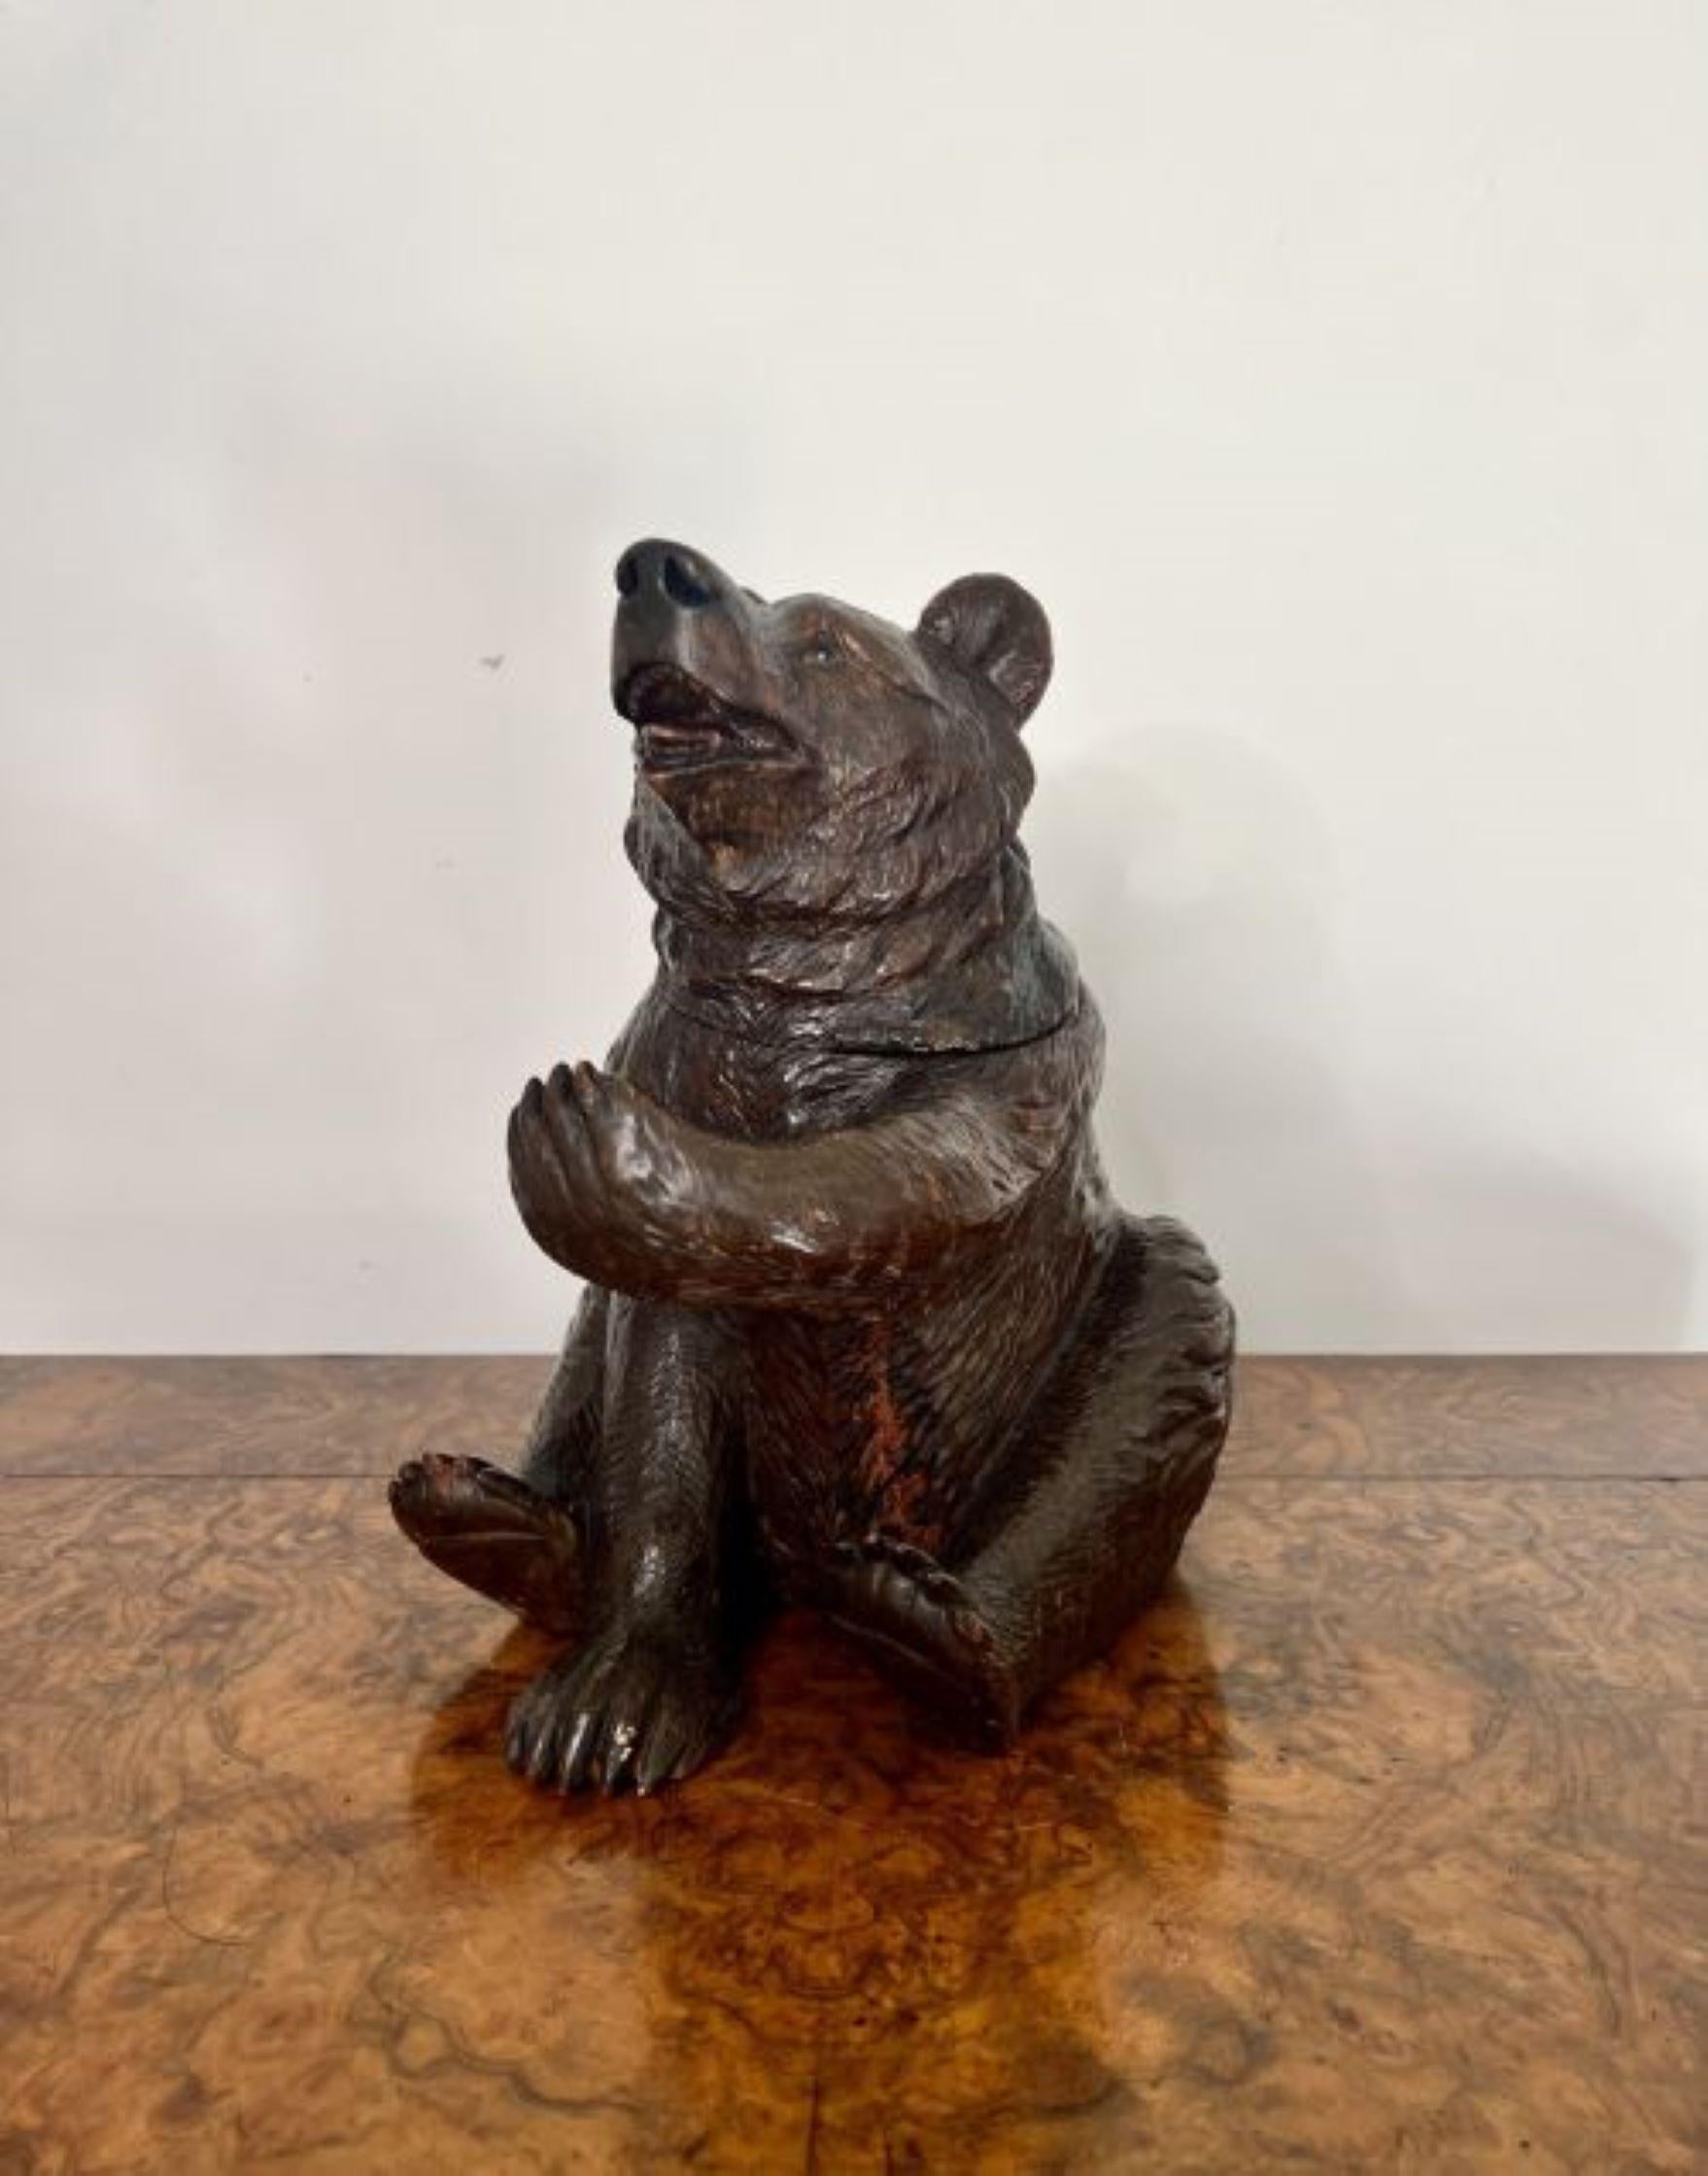 Grand ours de la Forêt-Noire sculpté au 19e siècle, de qualité victorienne, en position assise, avec les yeux en verre d'origine, des détails sculptés fantastiques sur toute la surface. Sa tête se soulève sur le côté pour révéler un compartiment de